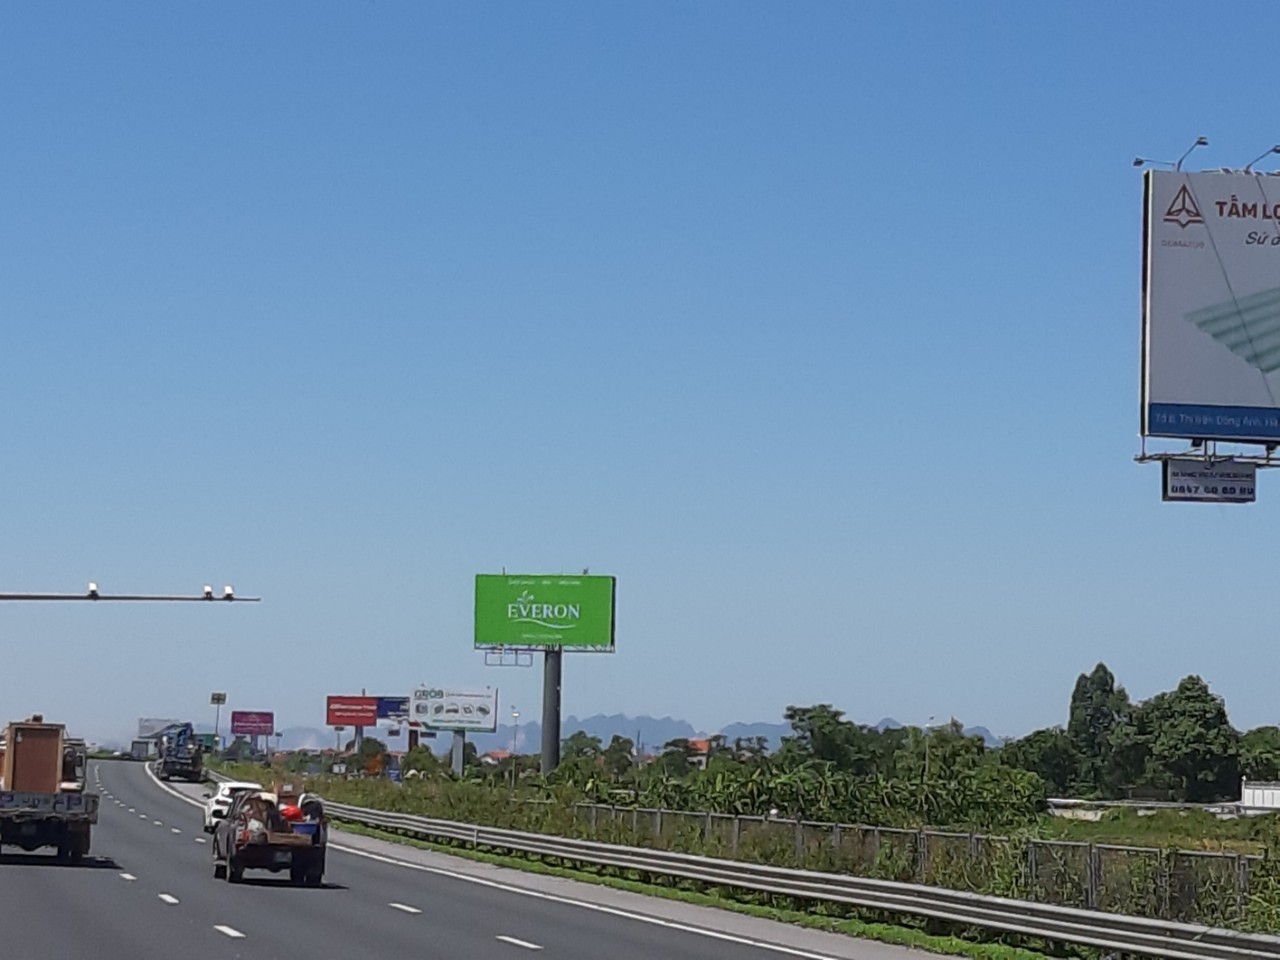 Quảng cáo Thương hiệu Everon trên cao tốc Pháp Vân - Cầu Giẽ